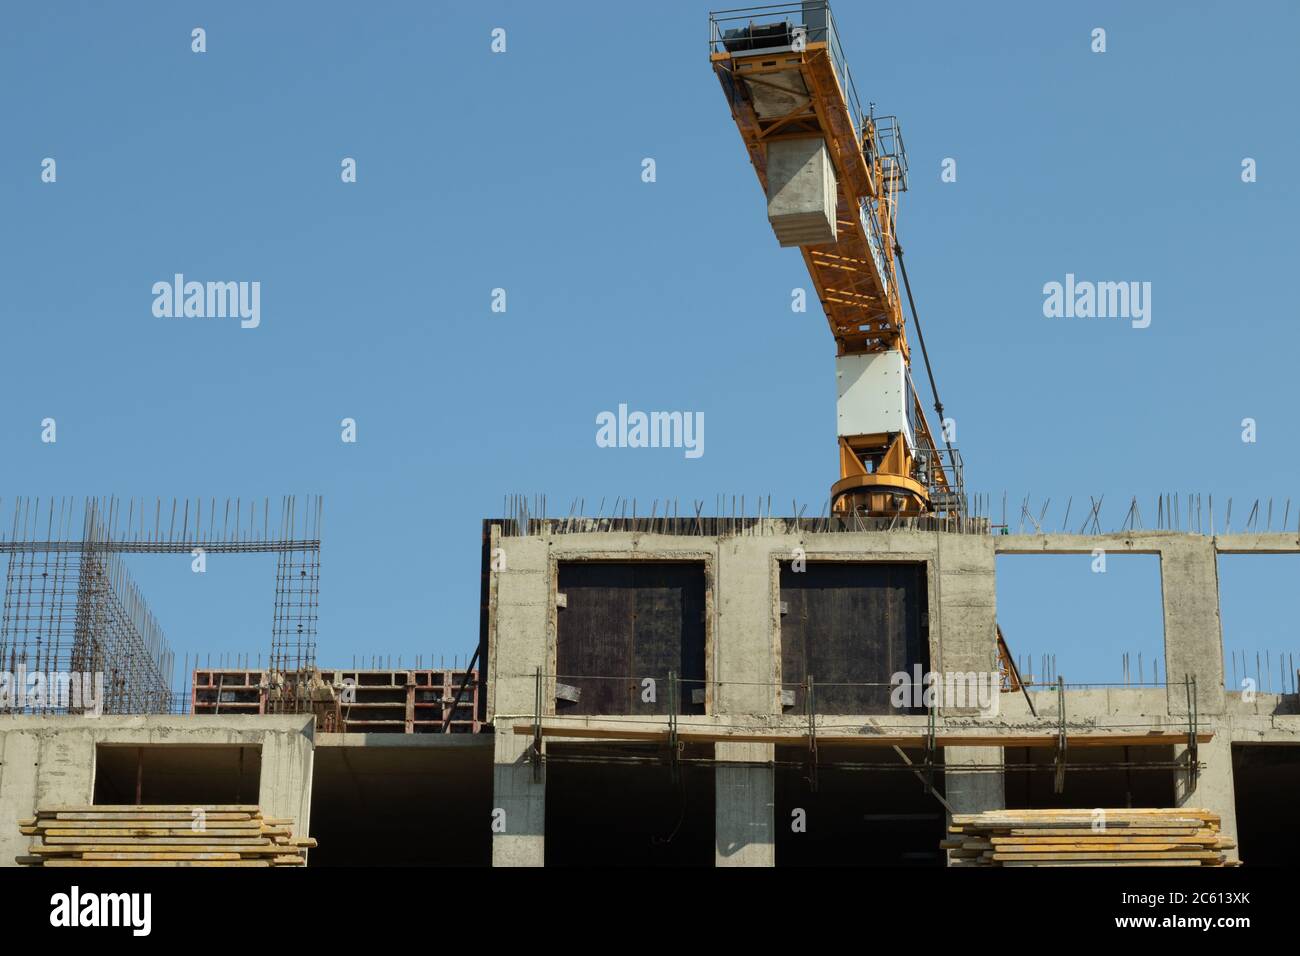 Processus de construction de la construction du centre commercial. Grue de construction et matériaux de construction Banque D'Images